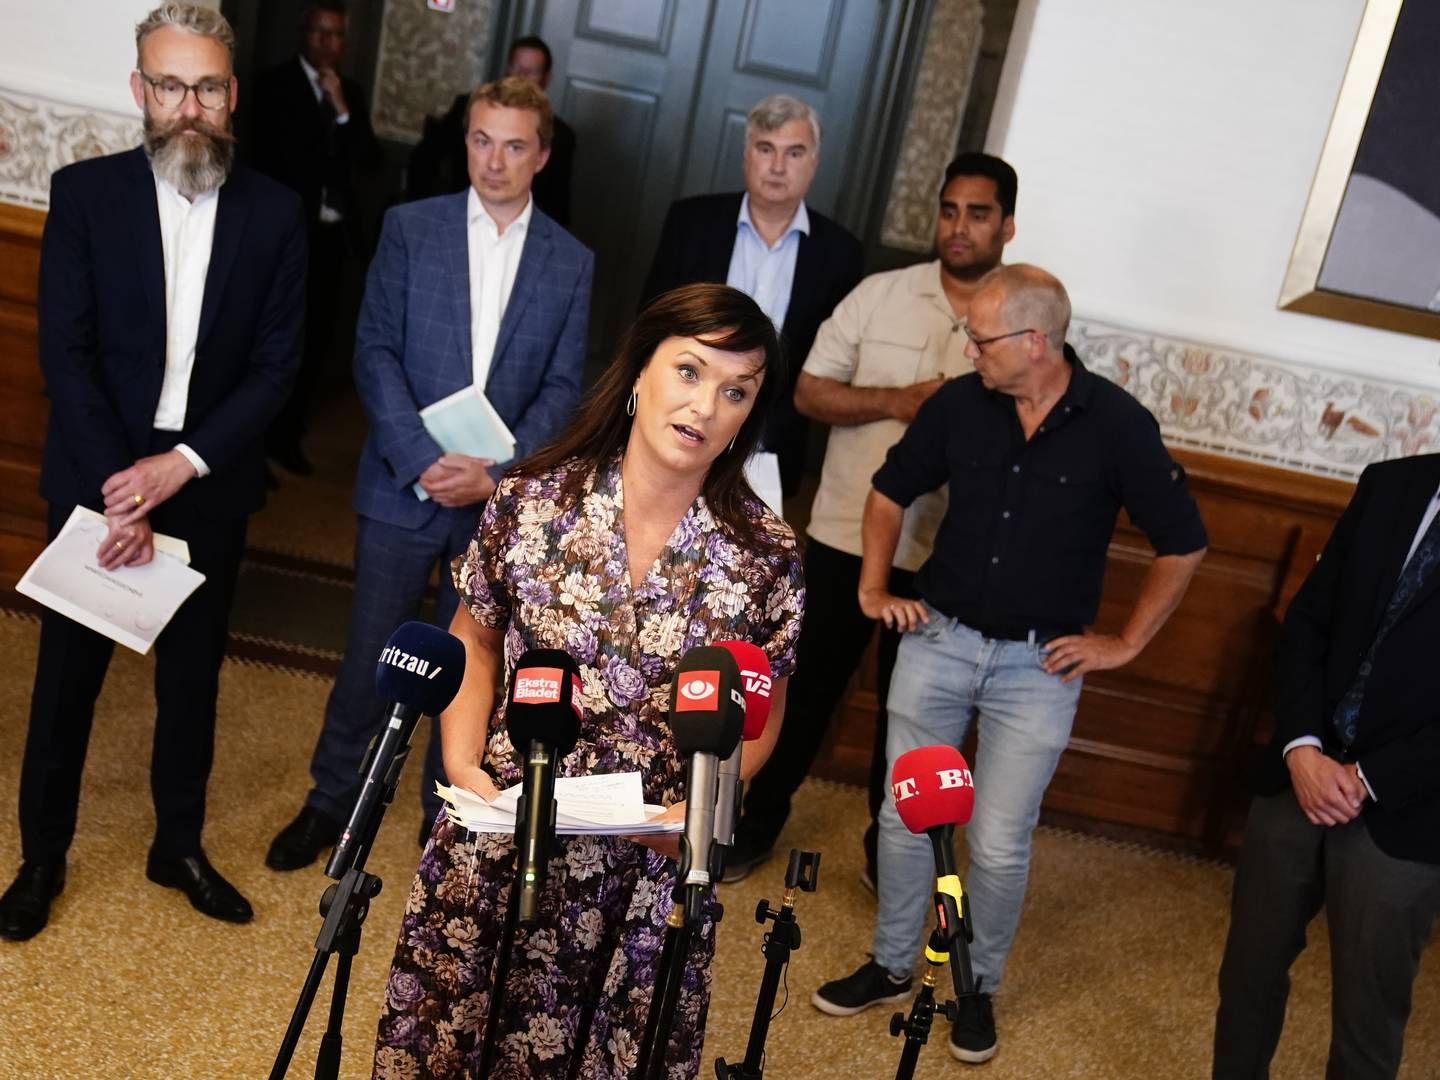 Folketingets Granskningsudvalg til pressemøde, hvor Minkkommissionens beretning afleveres på Christiansborg torsdag den 30. juni 2022.